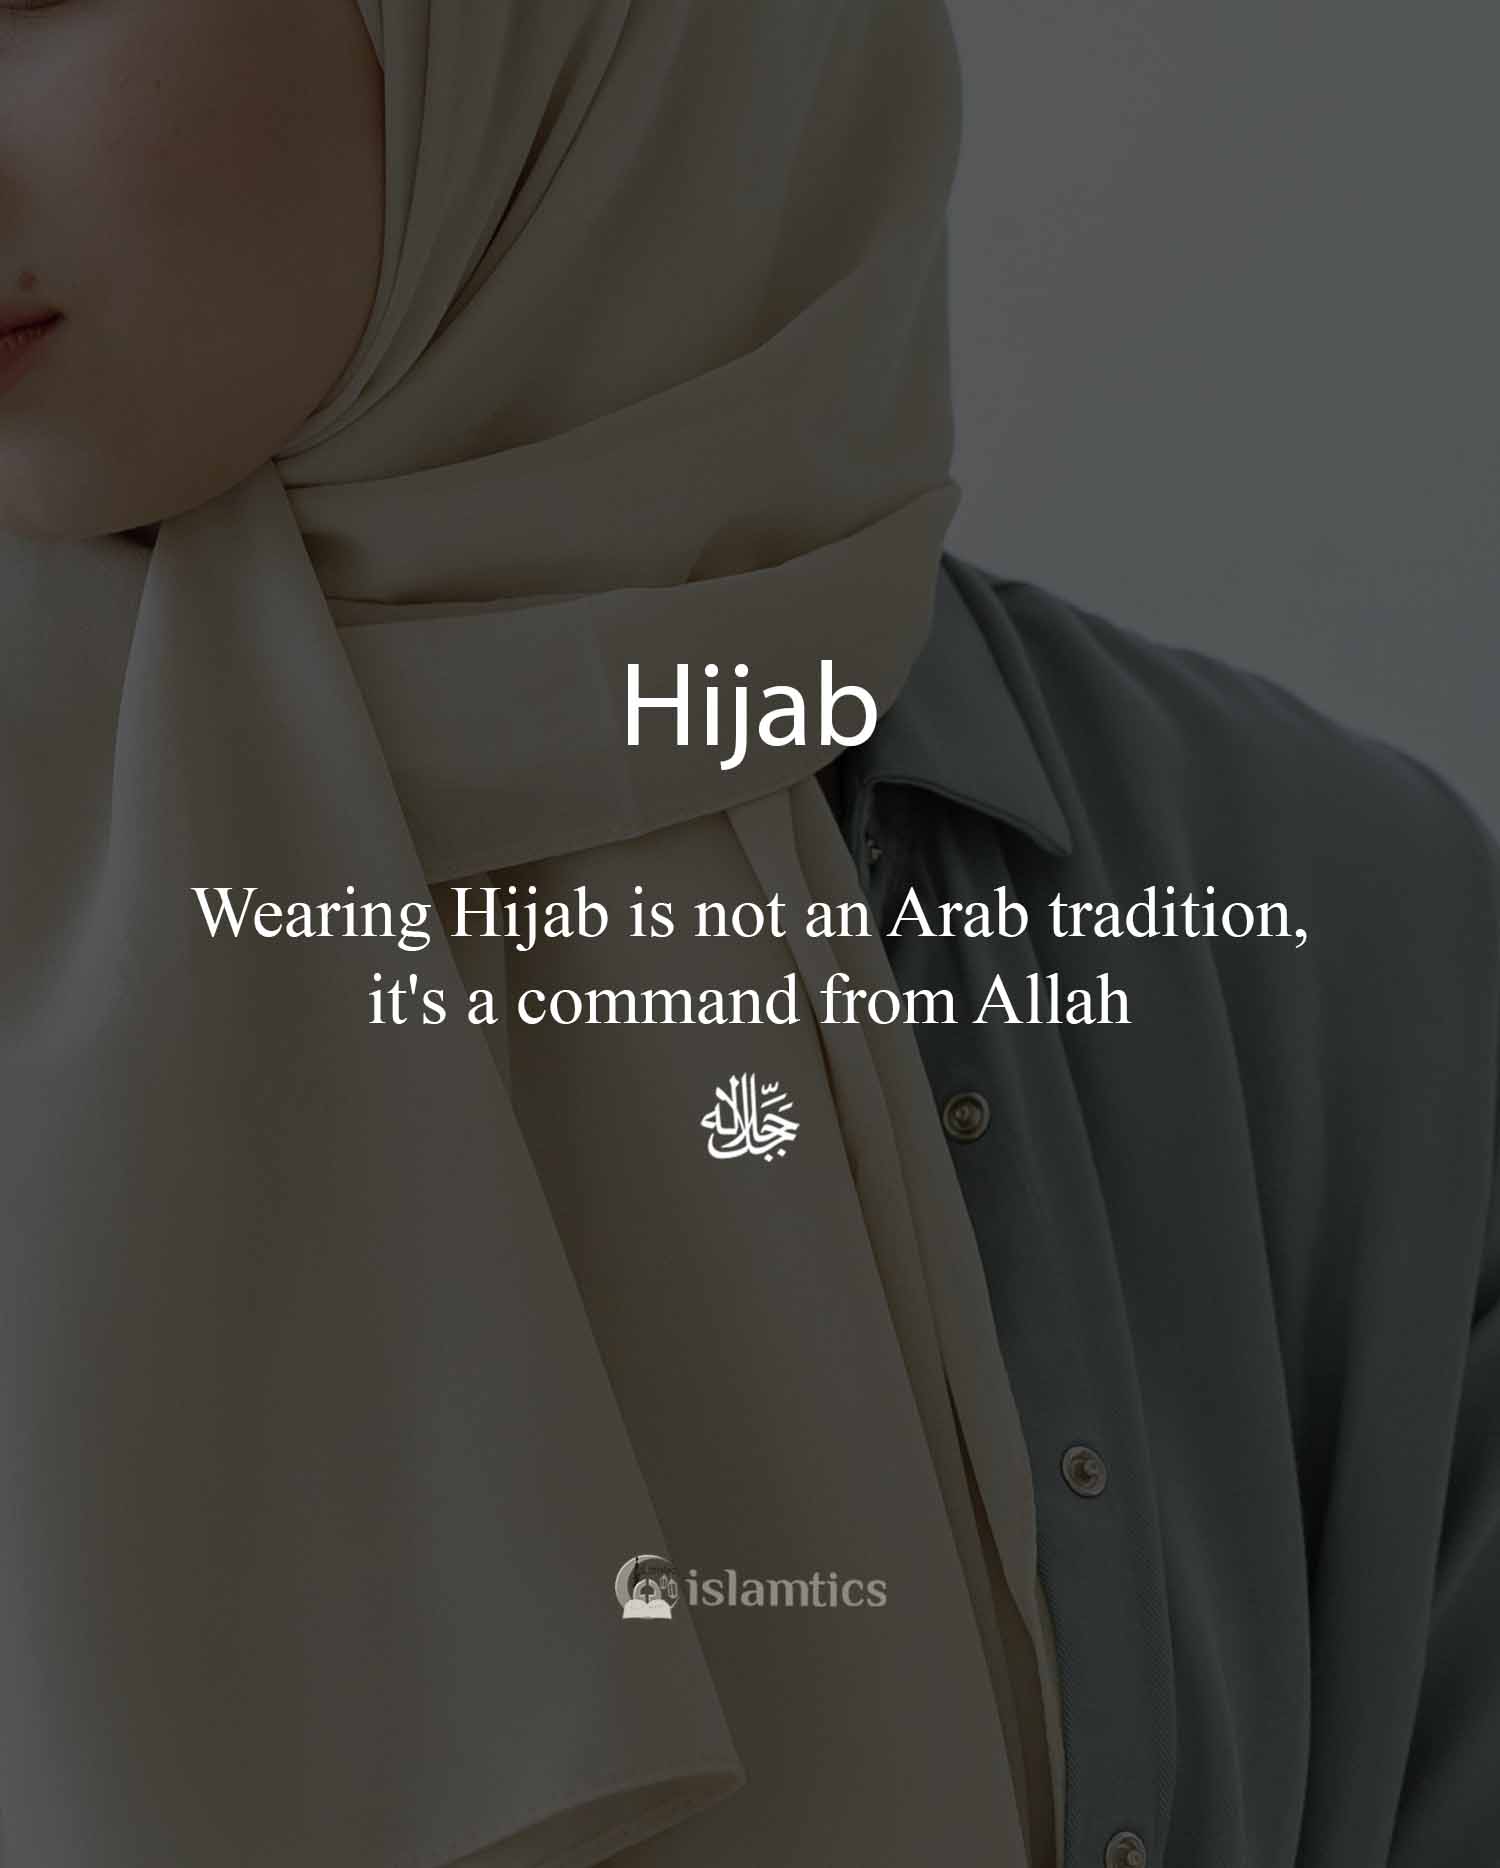 60+ Inspiring Hijab Quotes & Captions in English | islamtics